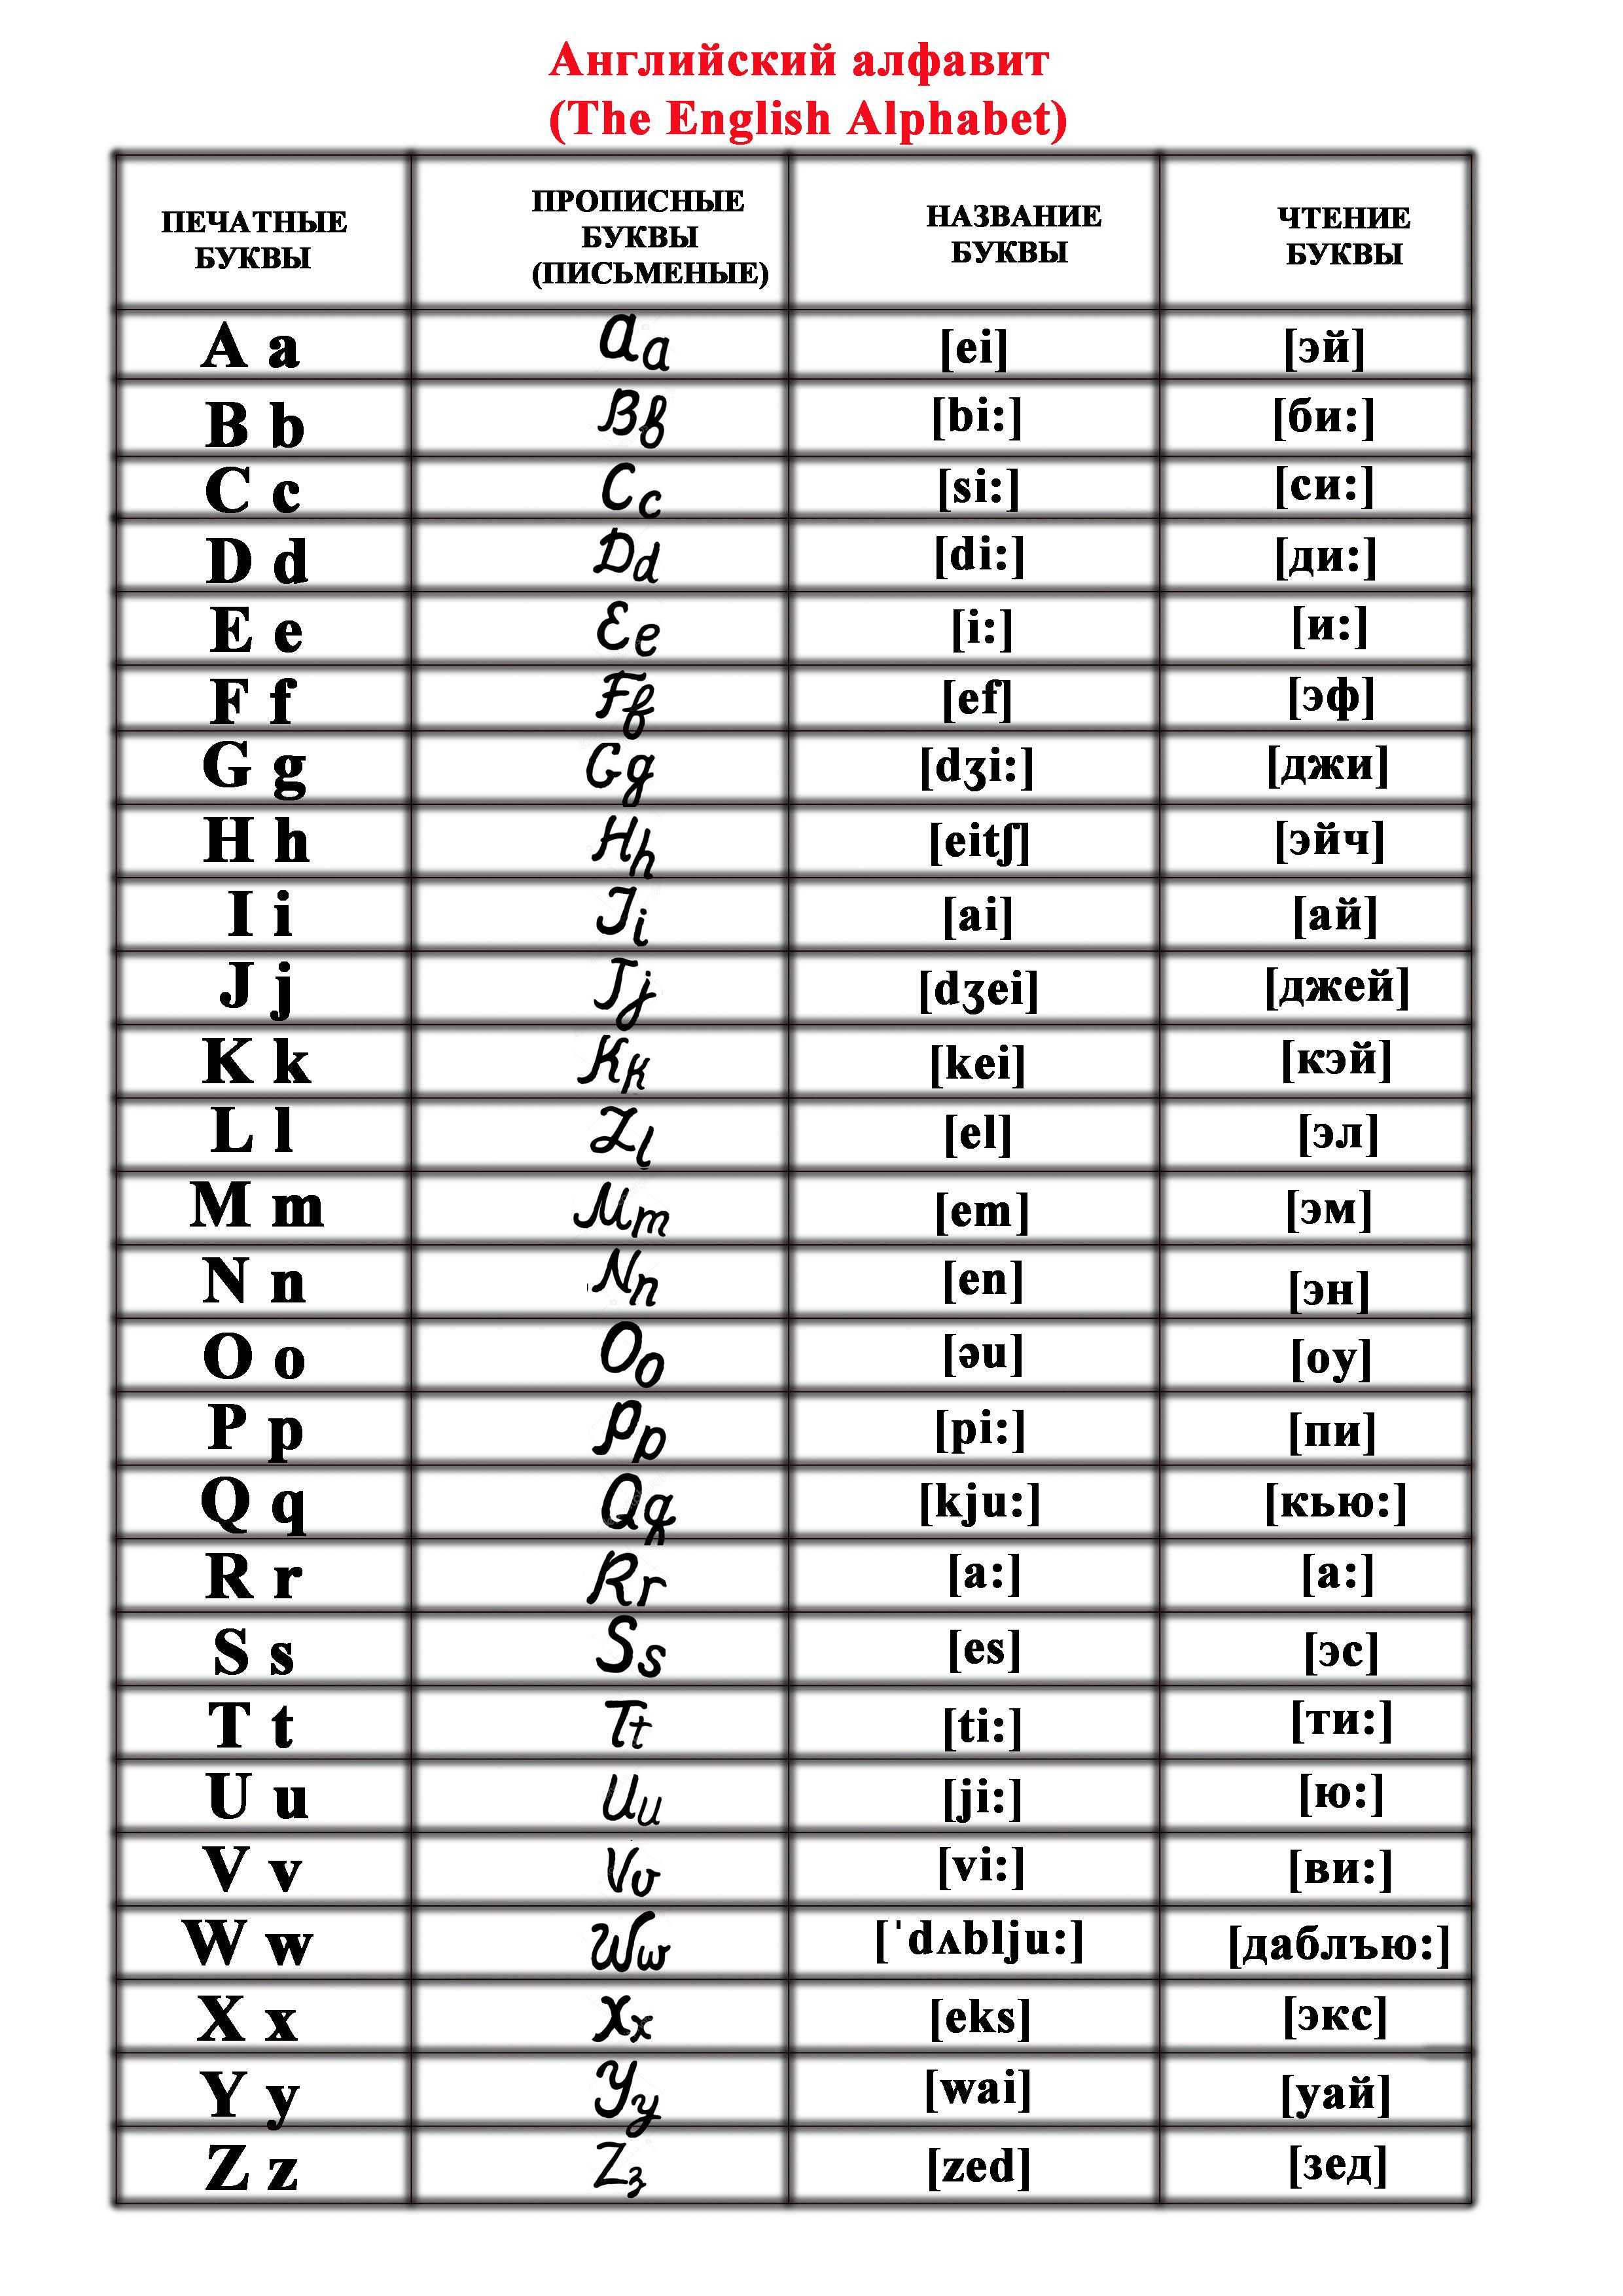 Английский алфавит с произношением и транскрипцией